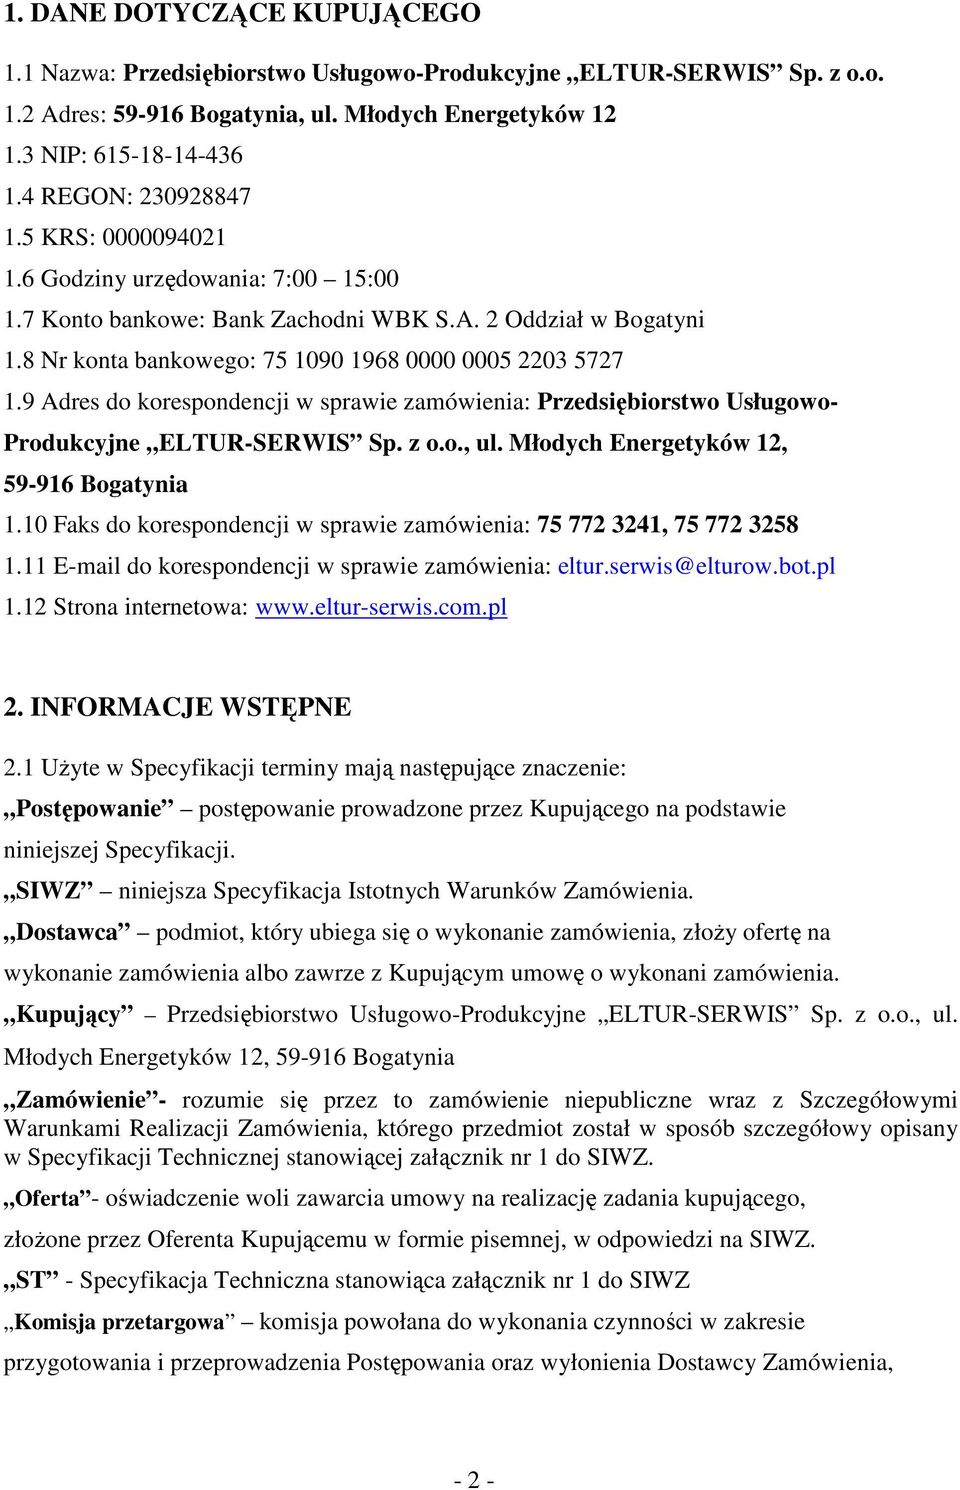 9 Adres do korespondencji w sprawie zamówienia: Przedsiębiorstwo Usługowo- Produkcyjne ELTUR-SERWIS Sp. z o.o., ul. Młodych Energetyków 12, 59-916 Bogatynia 1.